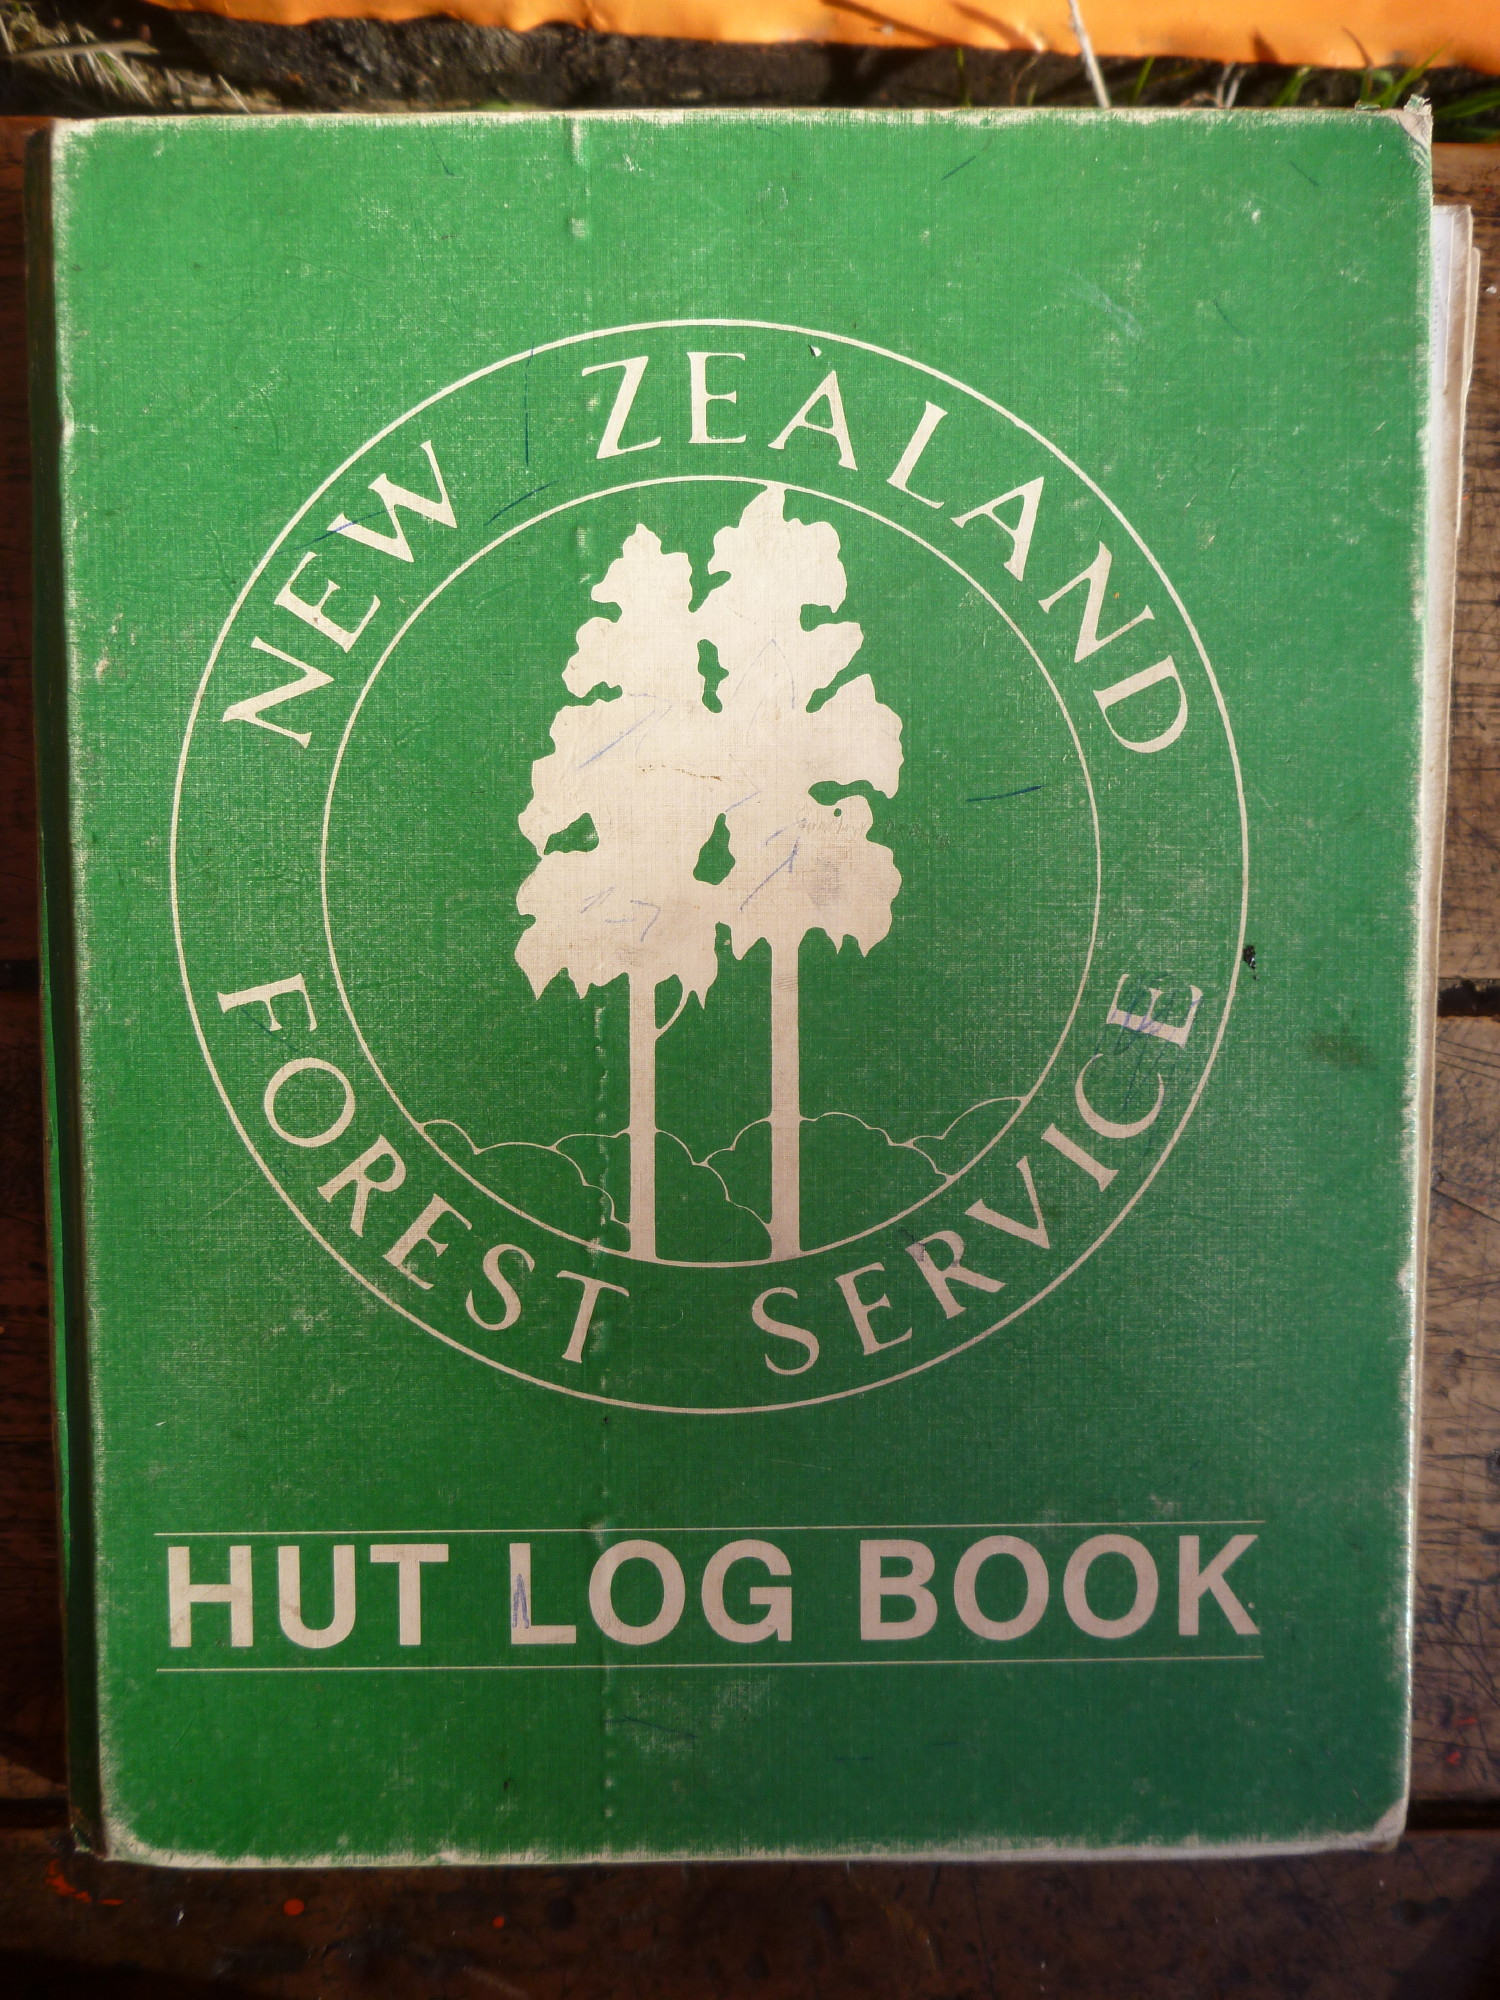 The historic hut book